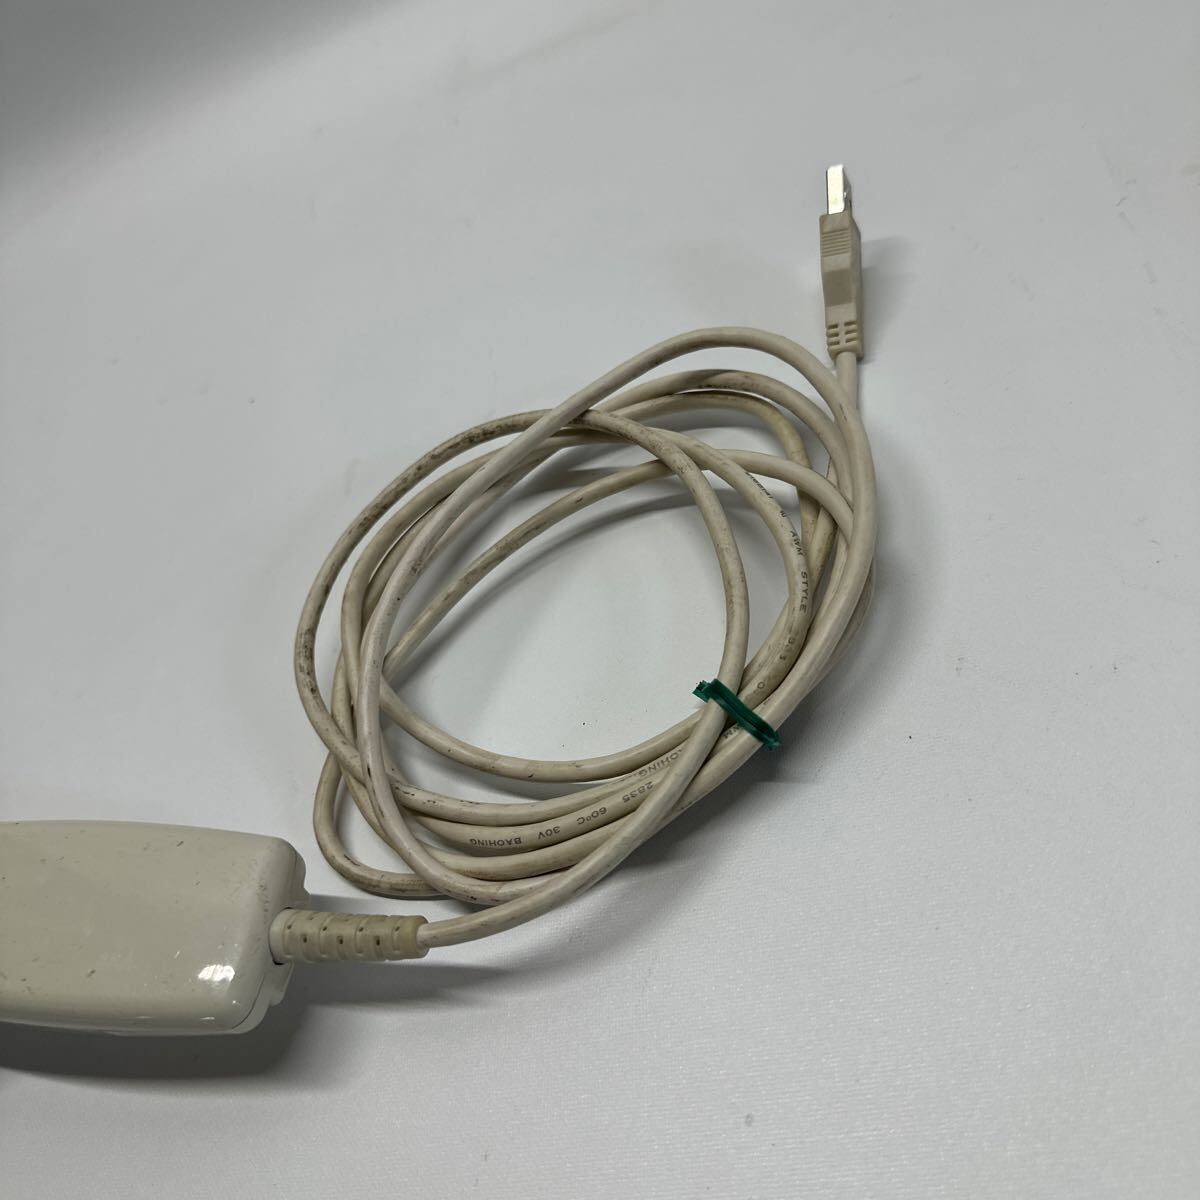 [D43_11K] бесплатная доставка исправно работающий товар Toshiba Tec HS-400 резистор специальный сканер USB